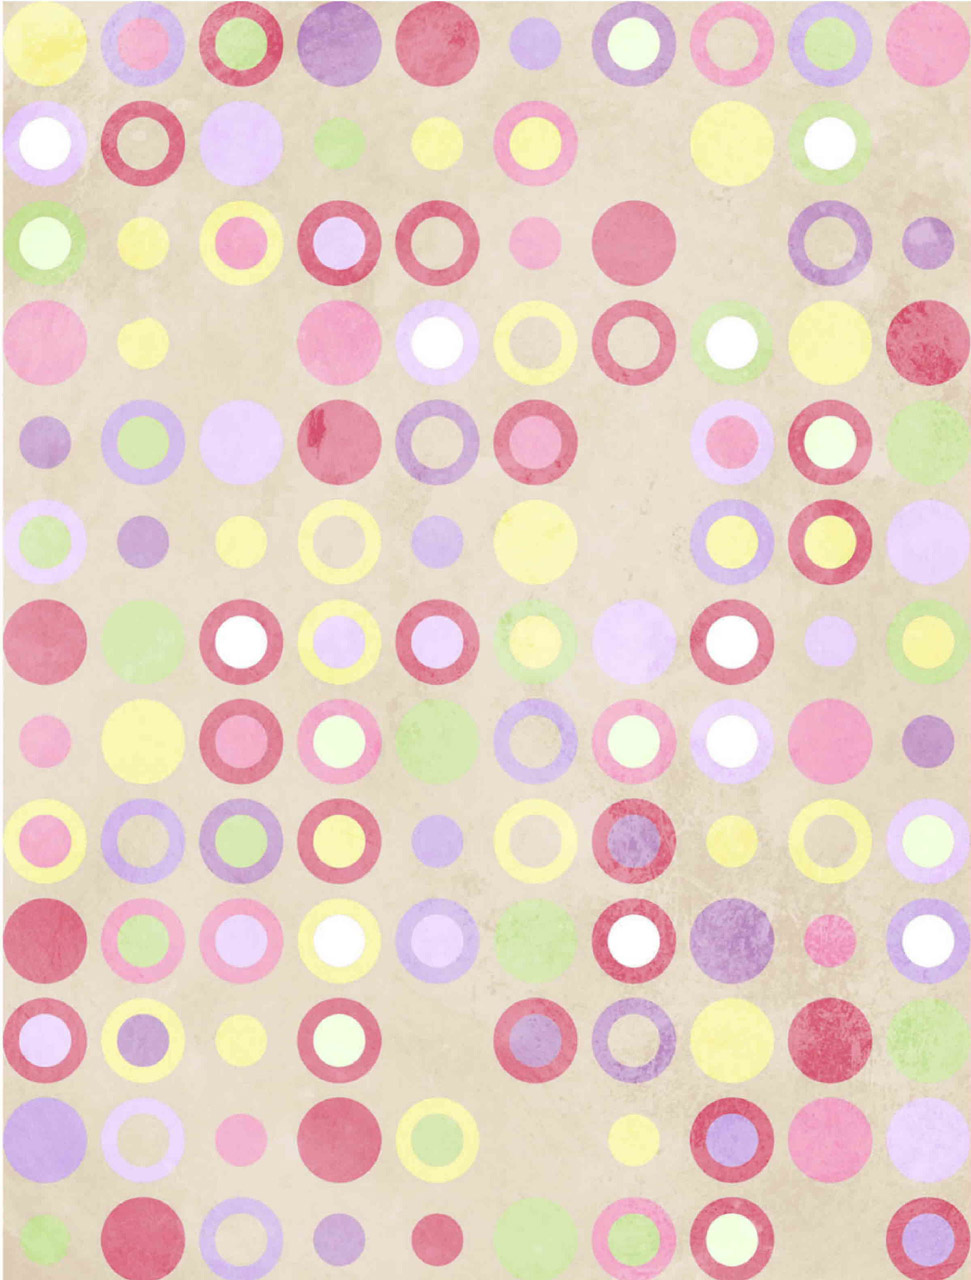 polka dot pink polka dots free photo